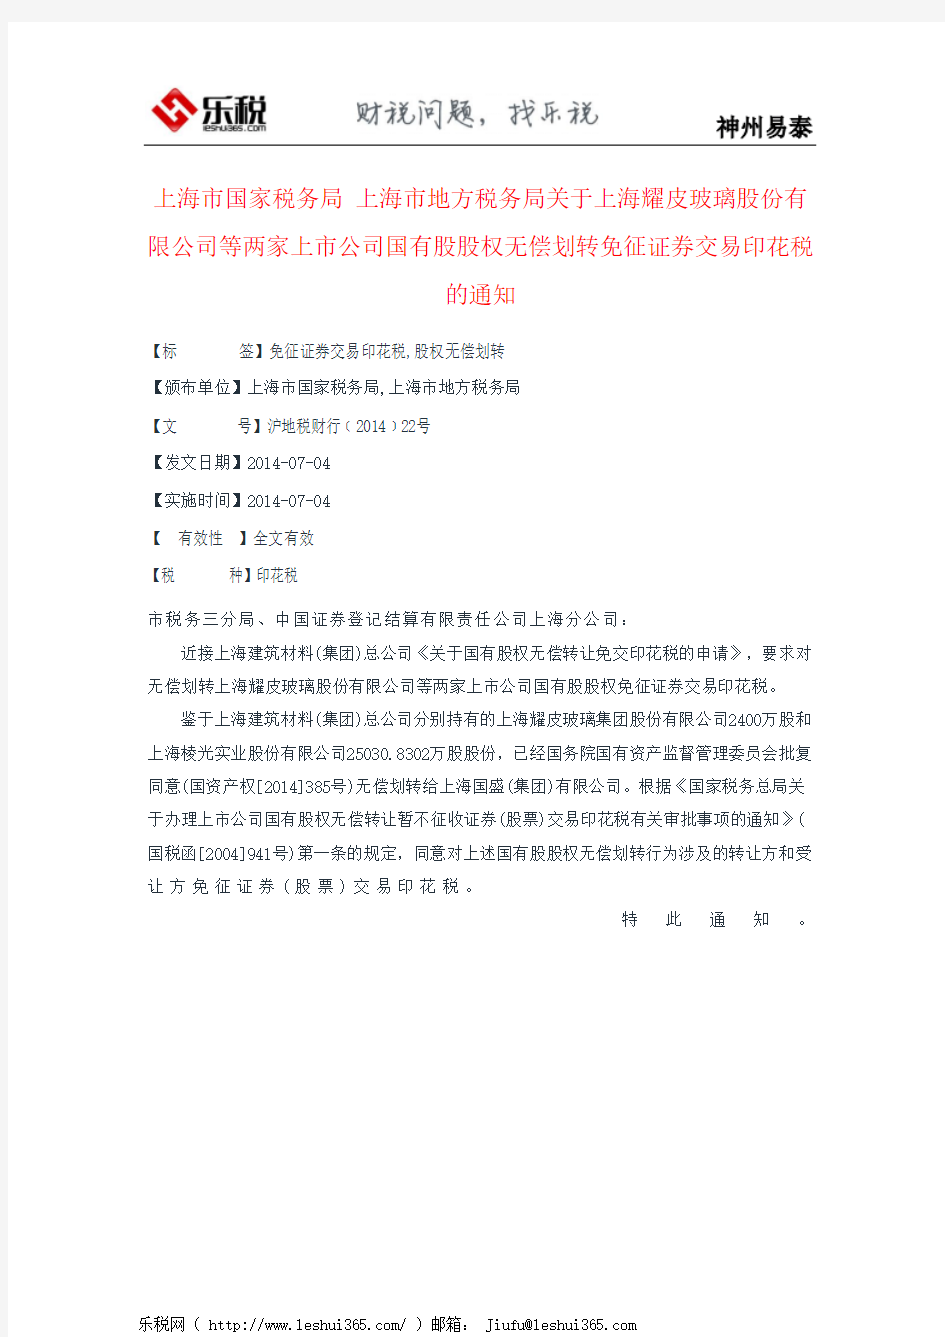 上海市国家税务局 上海市地方税务局关于上海耀皮玻璃股份有限公